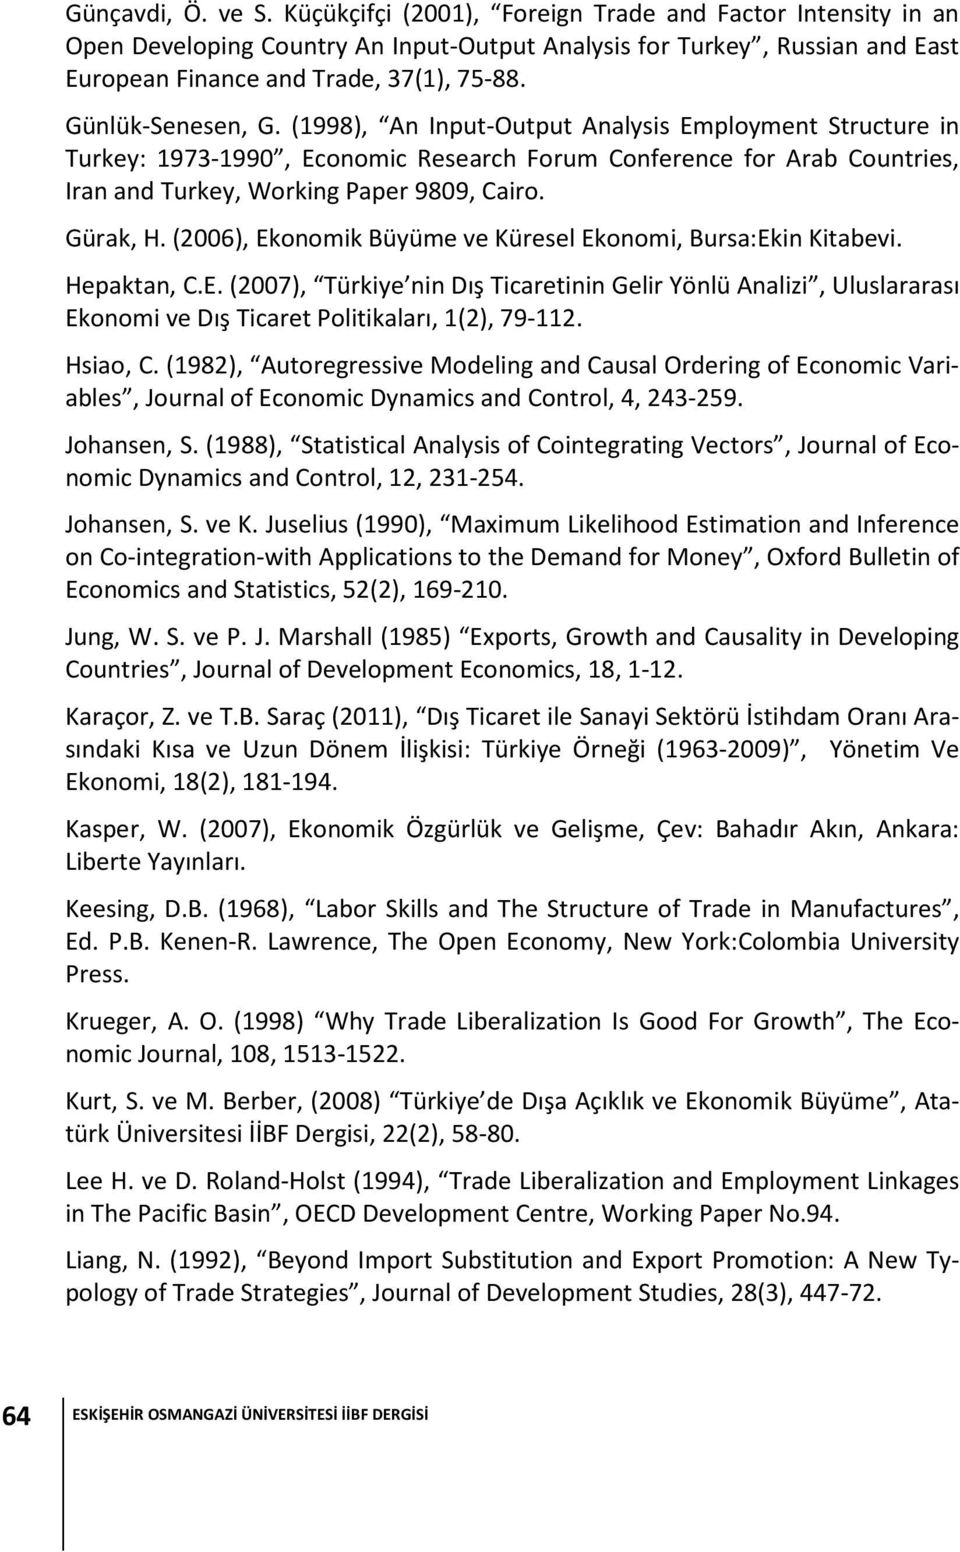 Gürak, H. (2006), Ekonomik Büyüme ve Küresel Ekonomi, Bursa:Ekin Kitabevi. Hepaktan, C.E. (2007), Türkiye nin Dış Ticaretinin Gelir Yönlü Analizi, Uluslararası Ekonomi ve Dış Ticaret Politikaları, 1(2), 79-112.